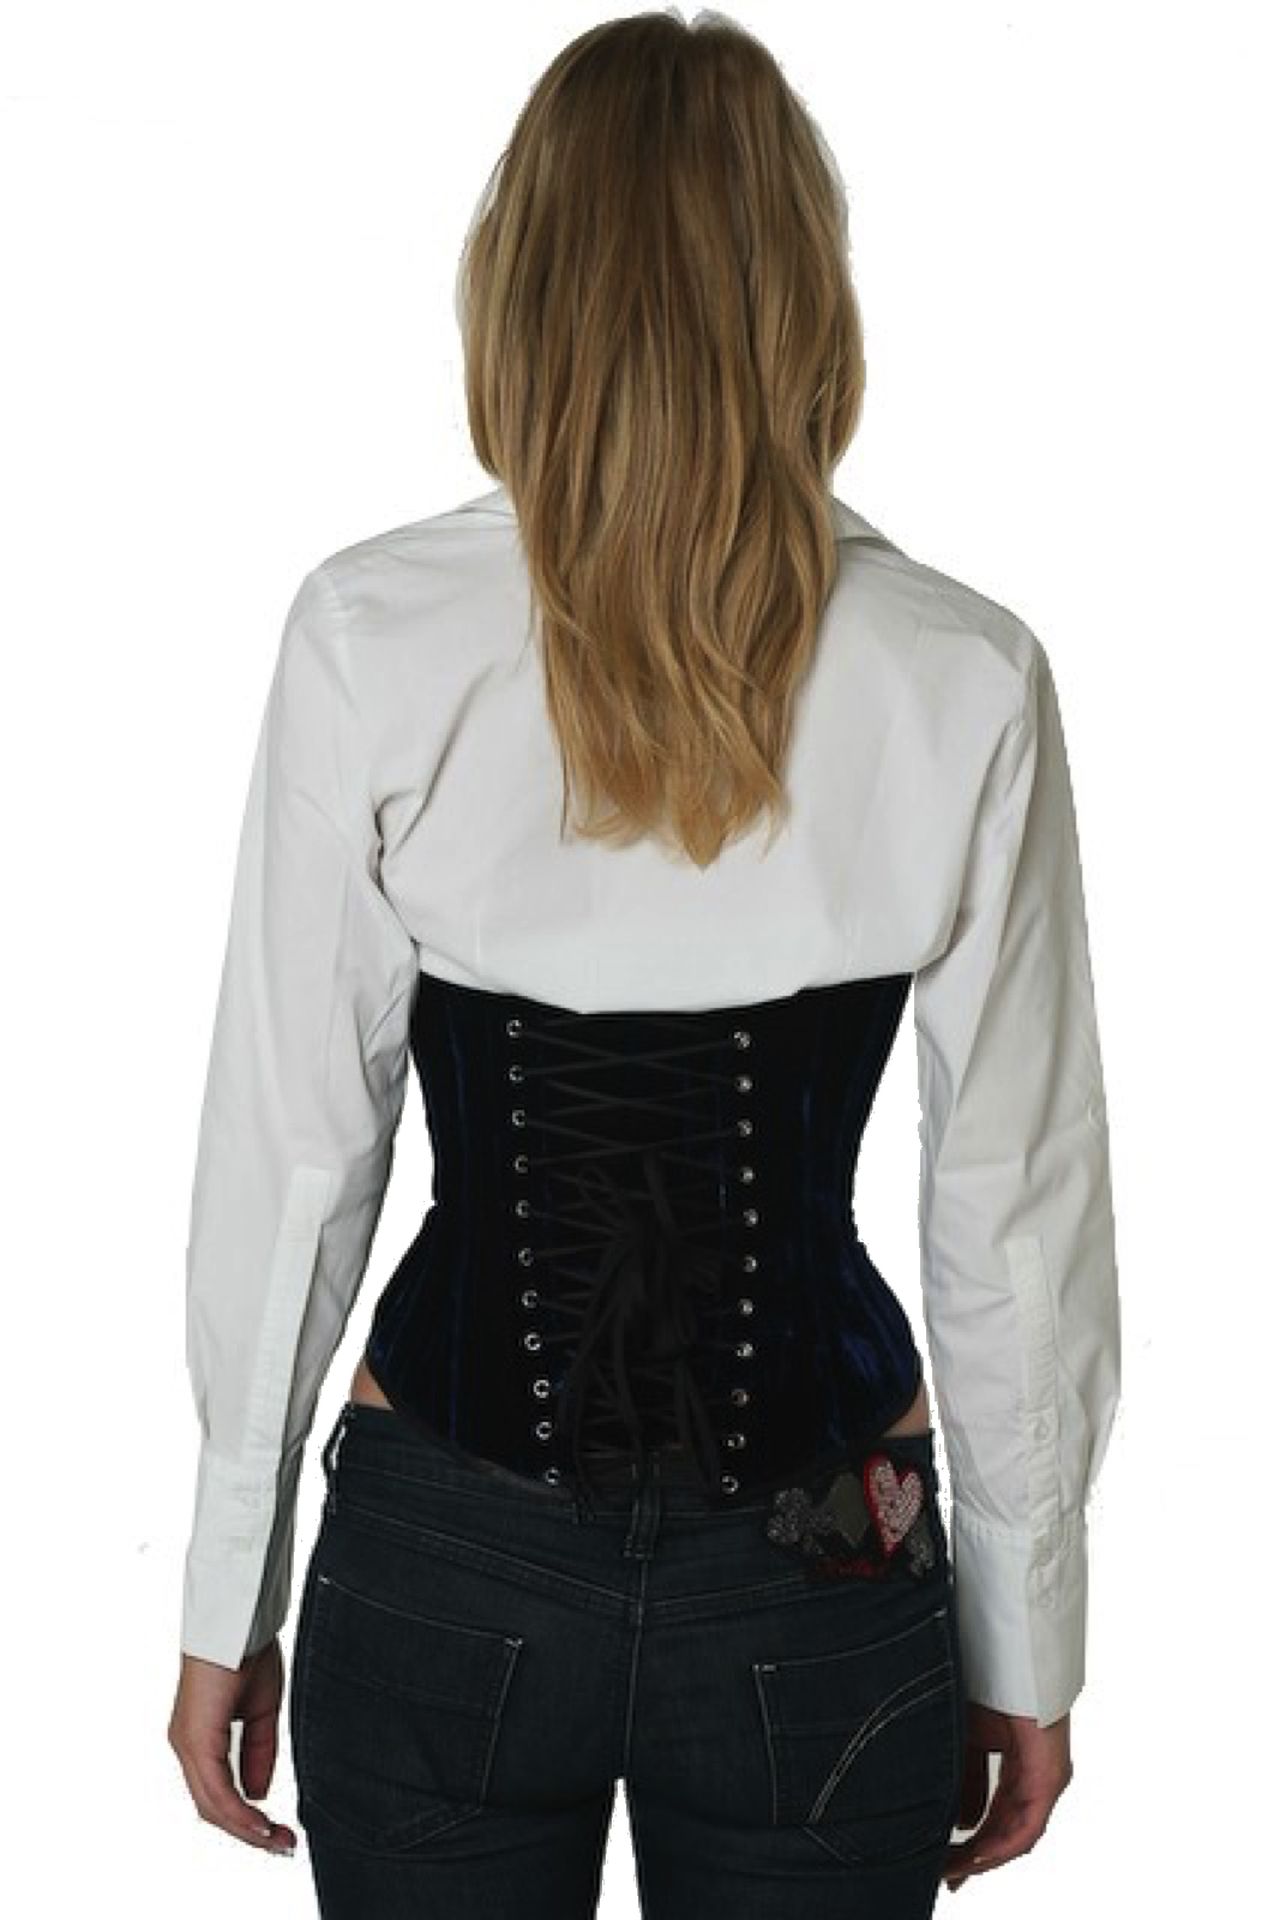 Fluweel corset blauw onderborst Korset vu62